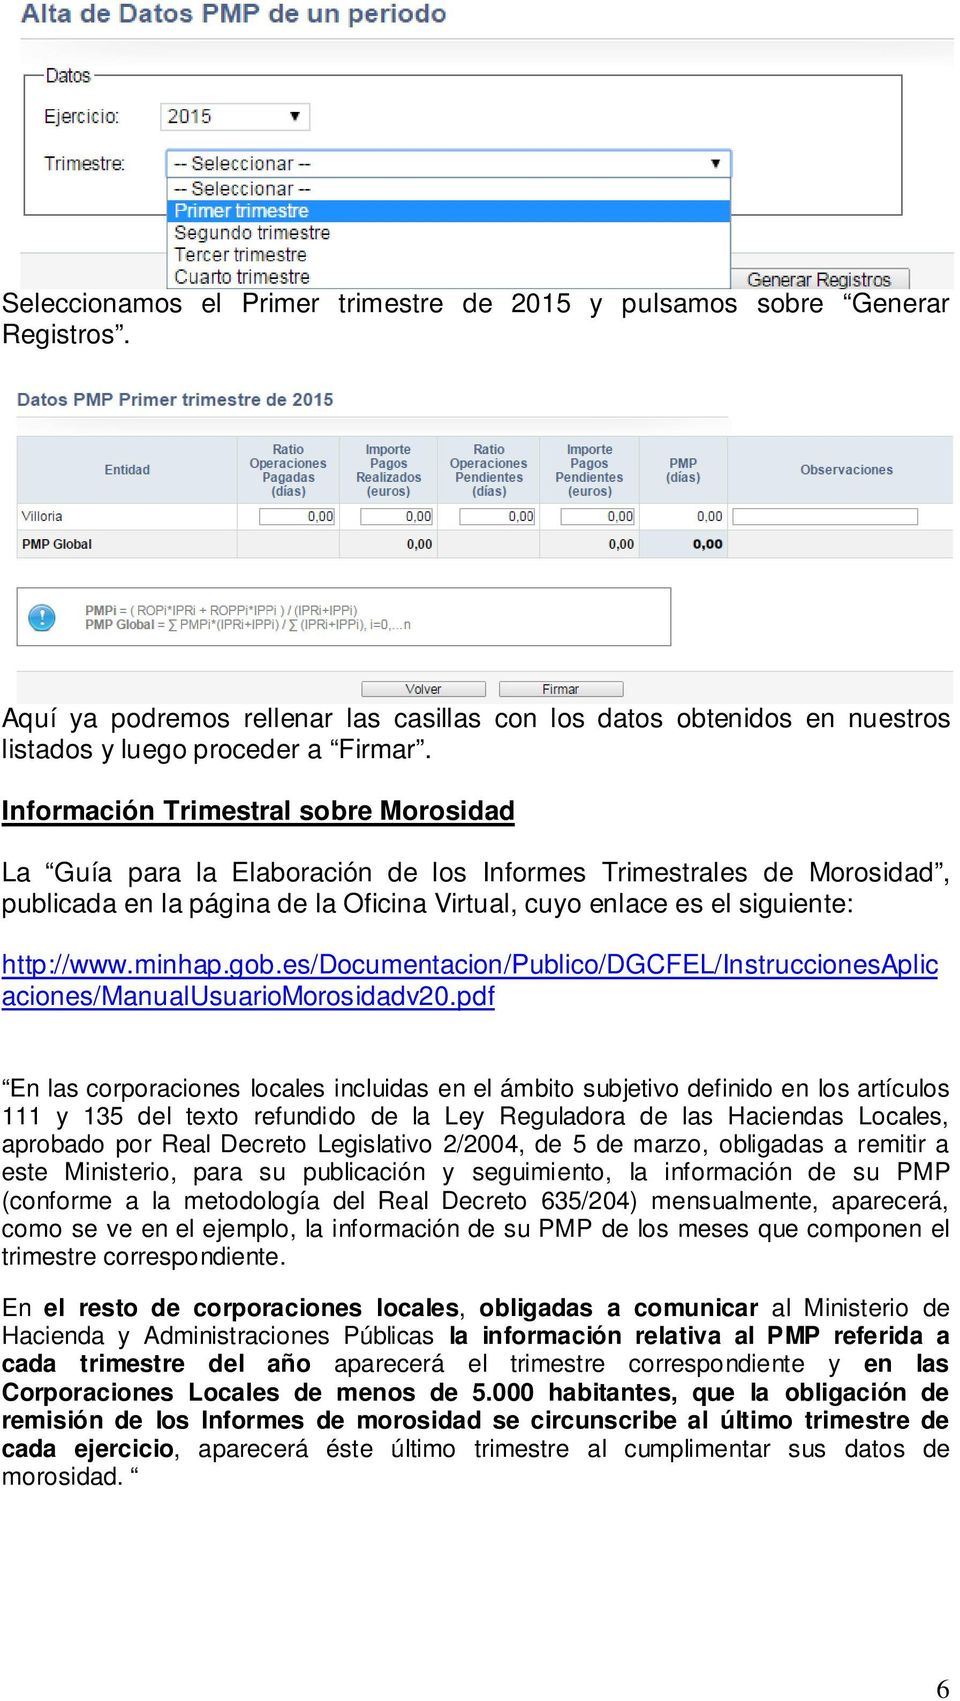 minhap.gob.es/documentacion/publico/dgcfel/instruccionesaplic aciones/manualusuariomorosidadv20.